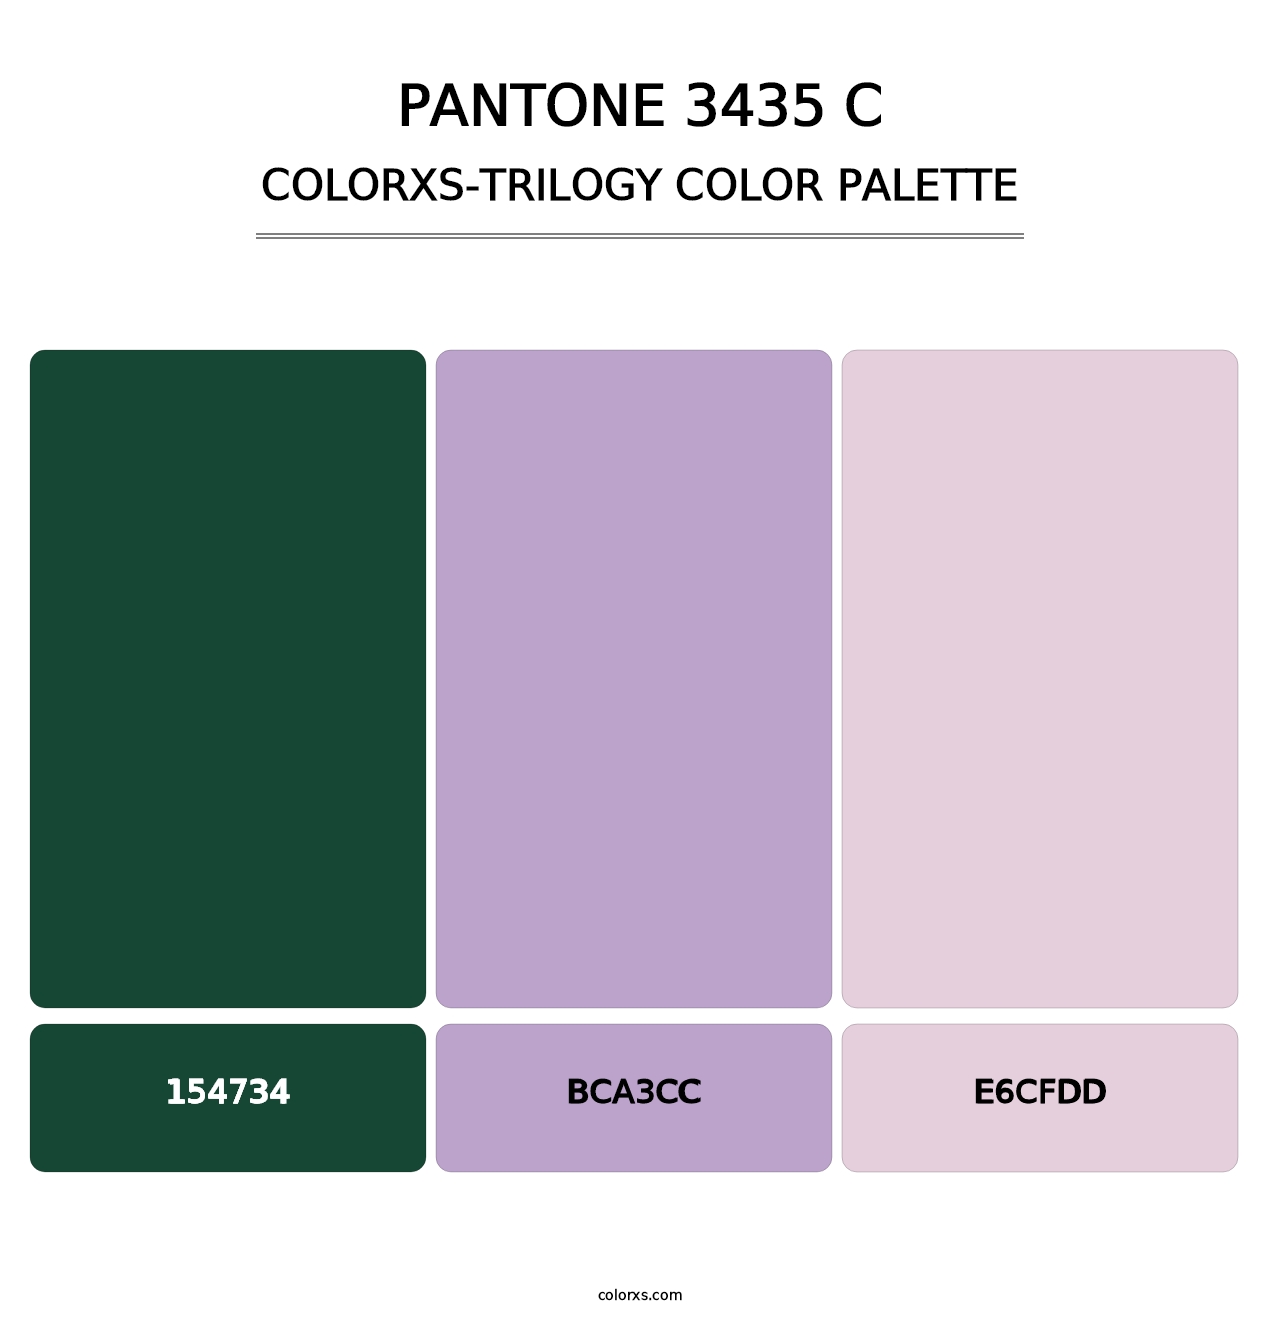 PANTONE 3435 C - Colorxs Trilogy Palette